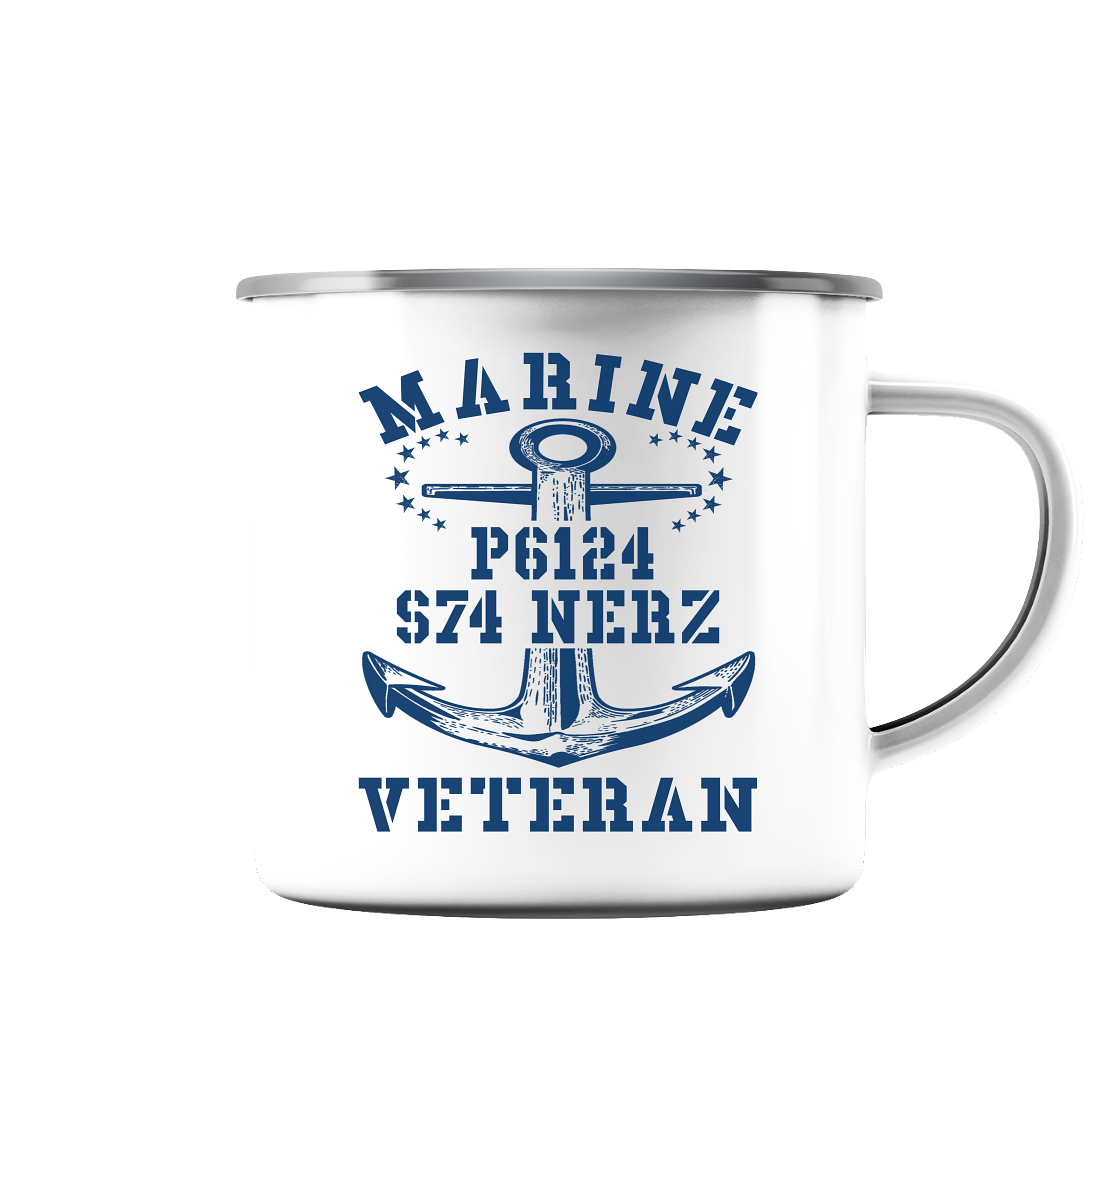 FK-Schnellboot P6124 NERZ Marine Veteran - Emaille Tasse (Silber)